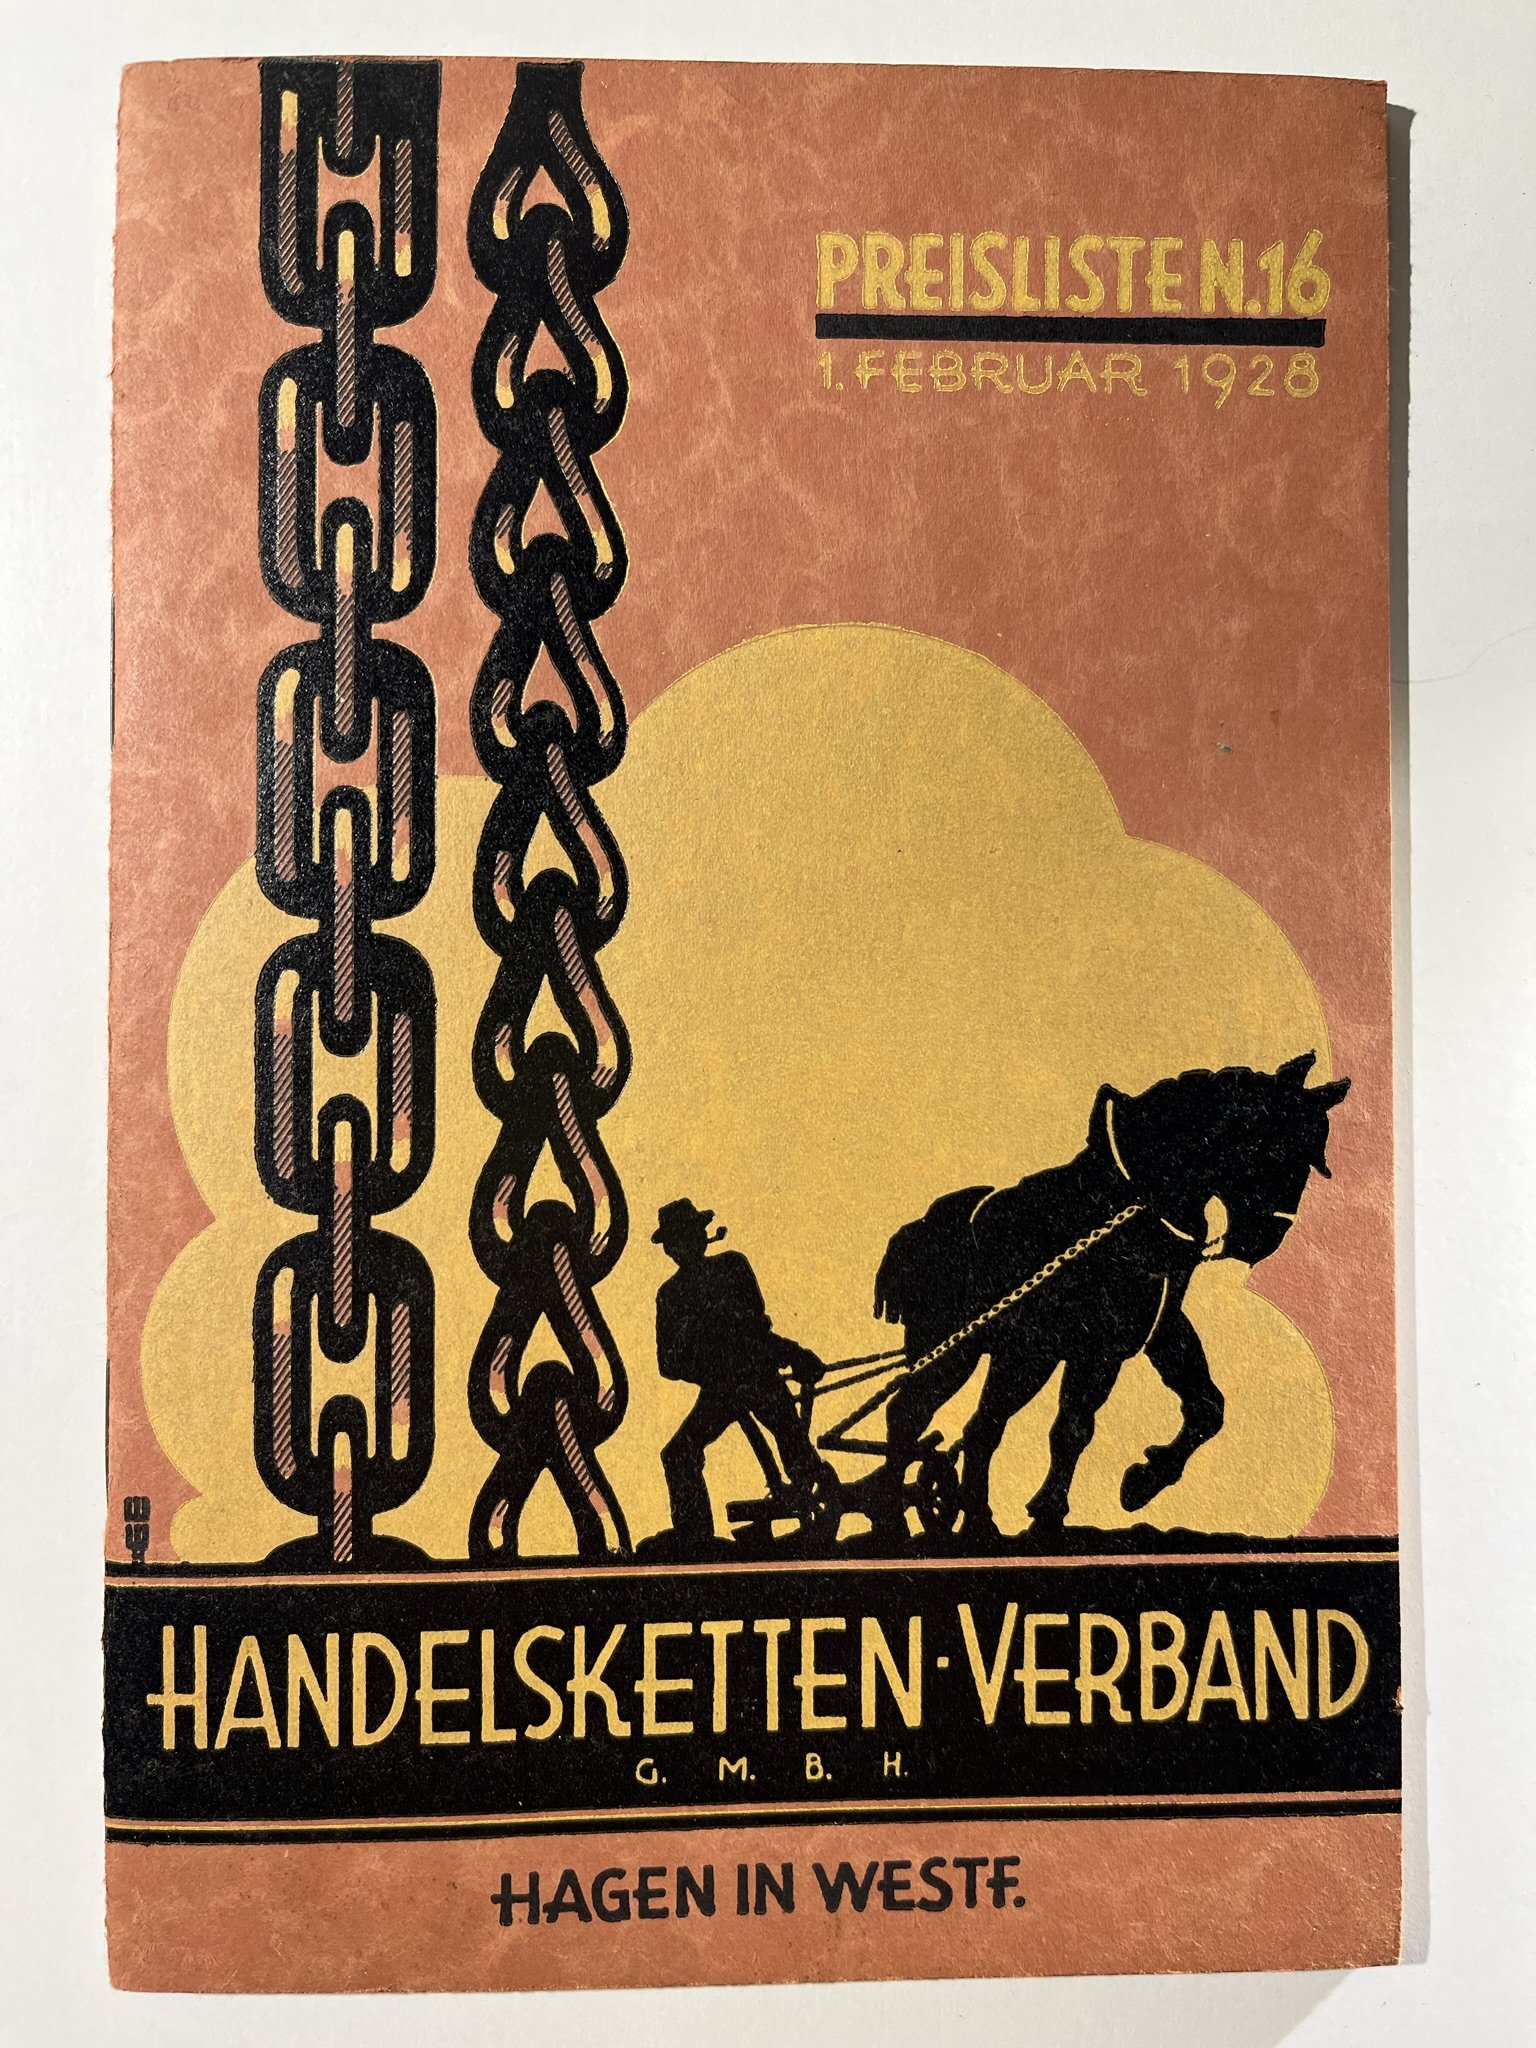 Preisliste N. 16 vom 1. Februar 1928 des Handelsketten-Verbands (Westfälisches Kettenschmiedemuseum Fröndenberg/Ruhr CC BY-NC-SA)